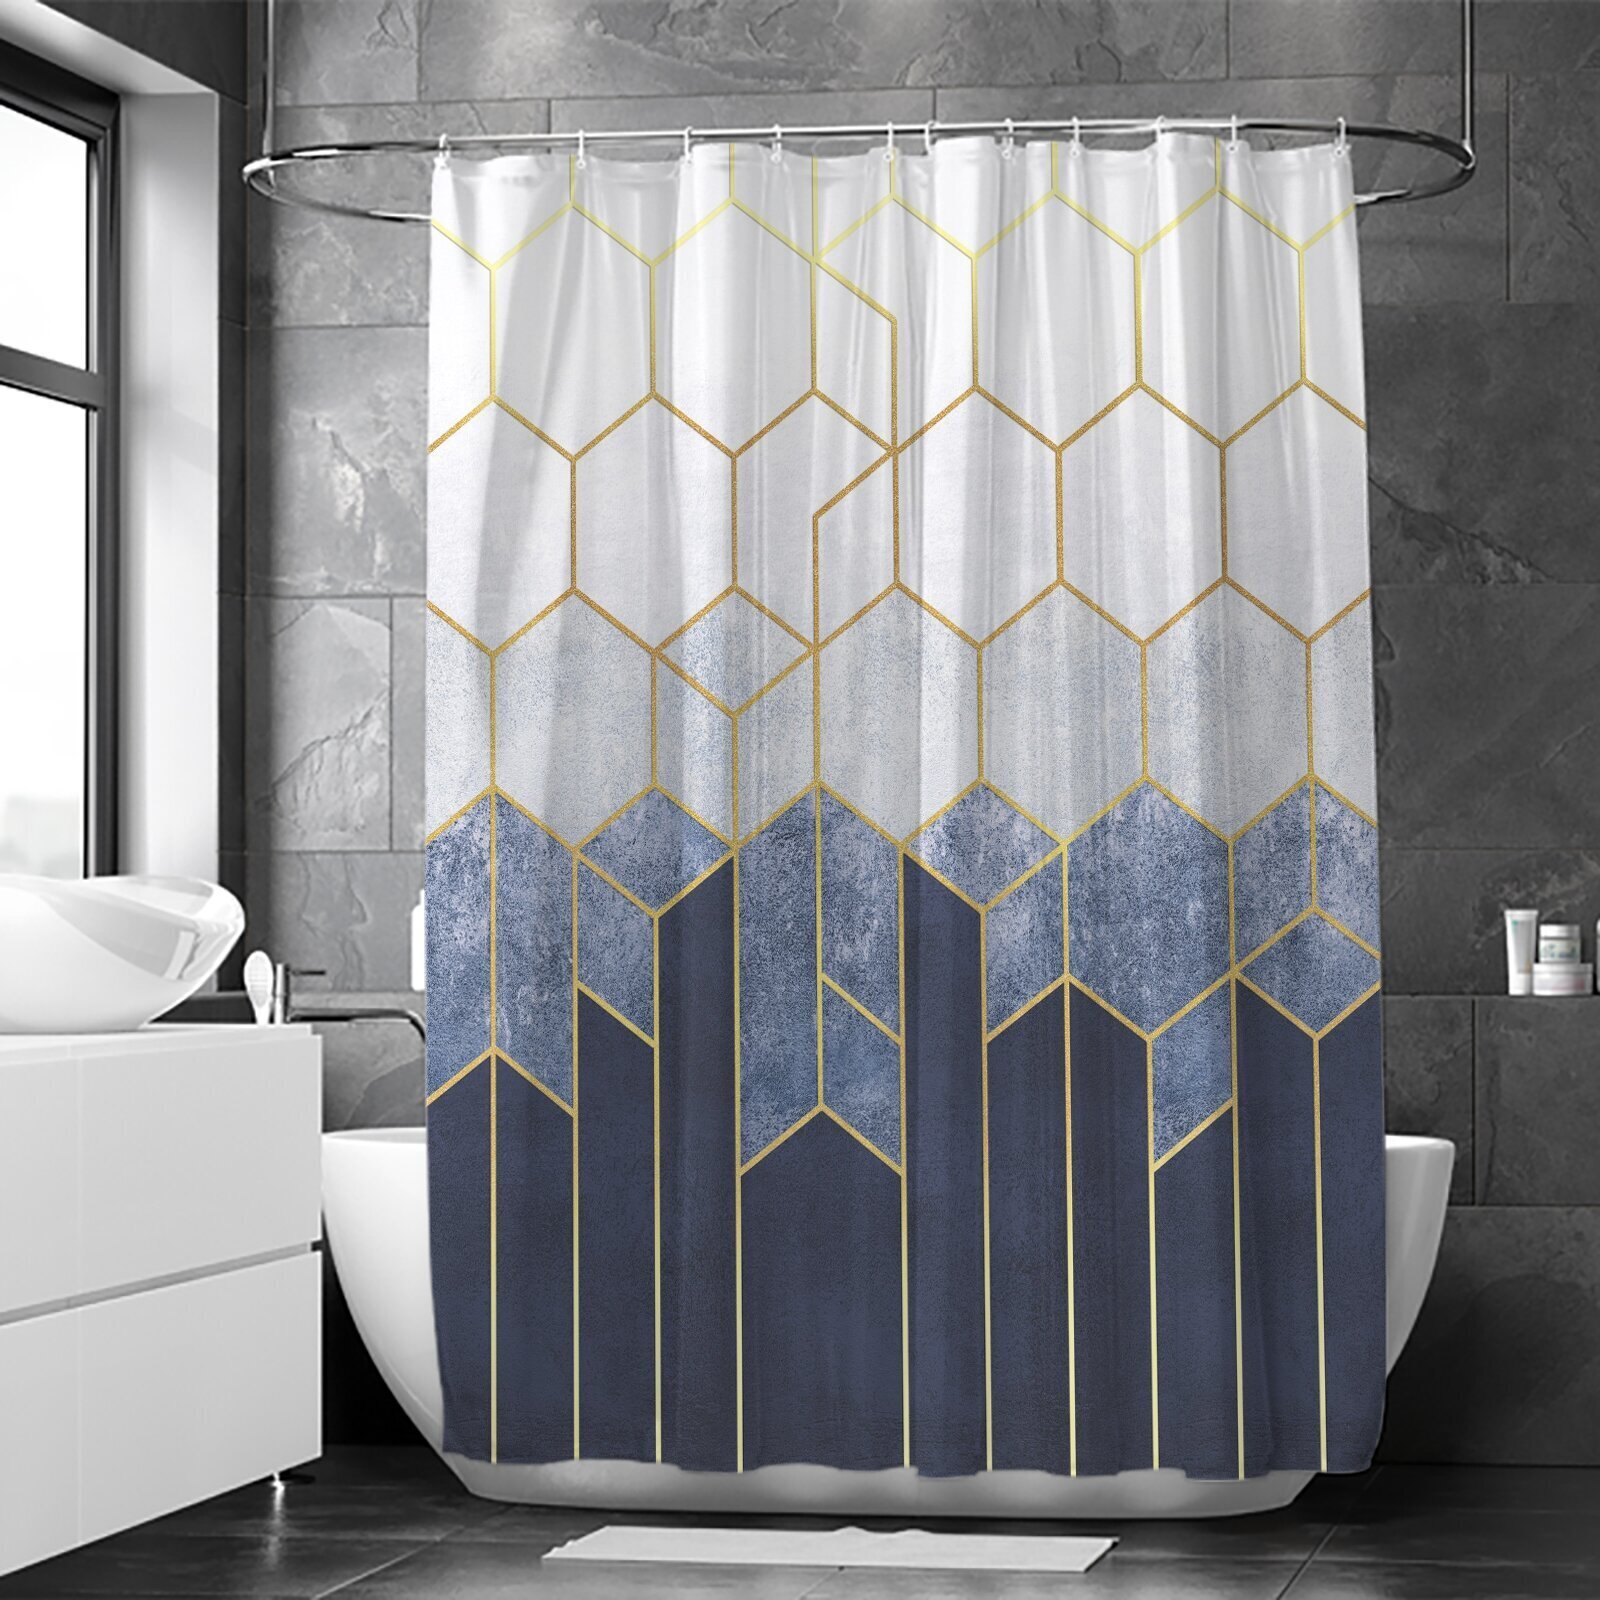 Unique metallic gold shower curtain